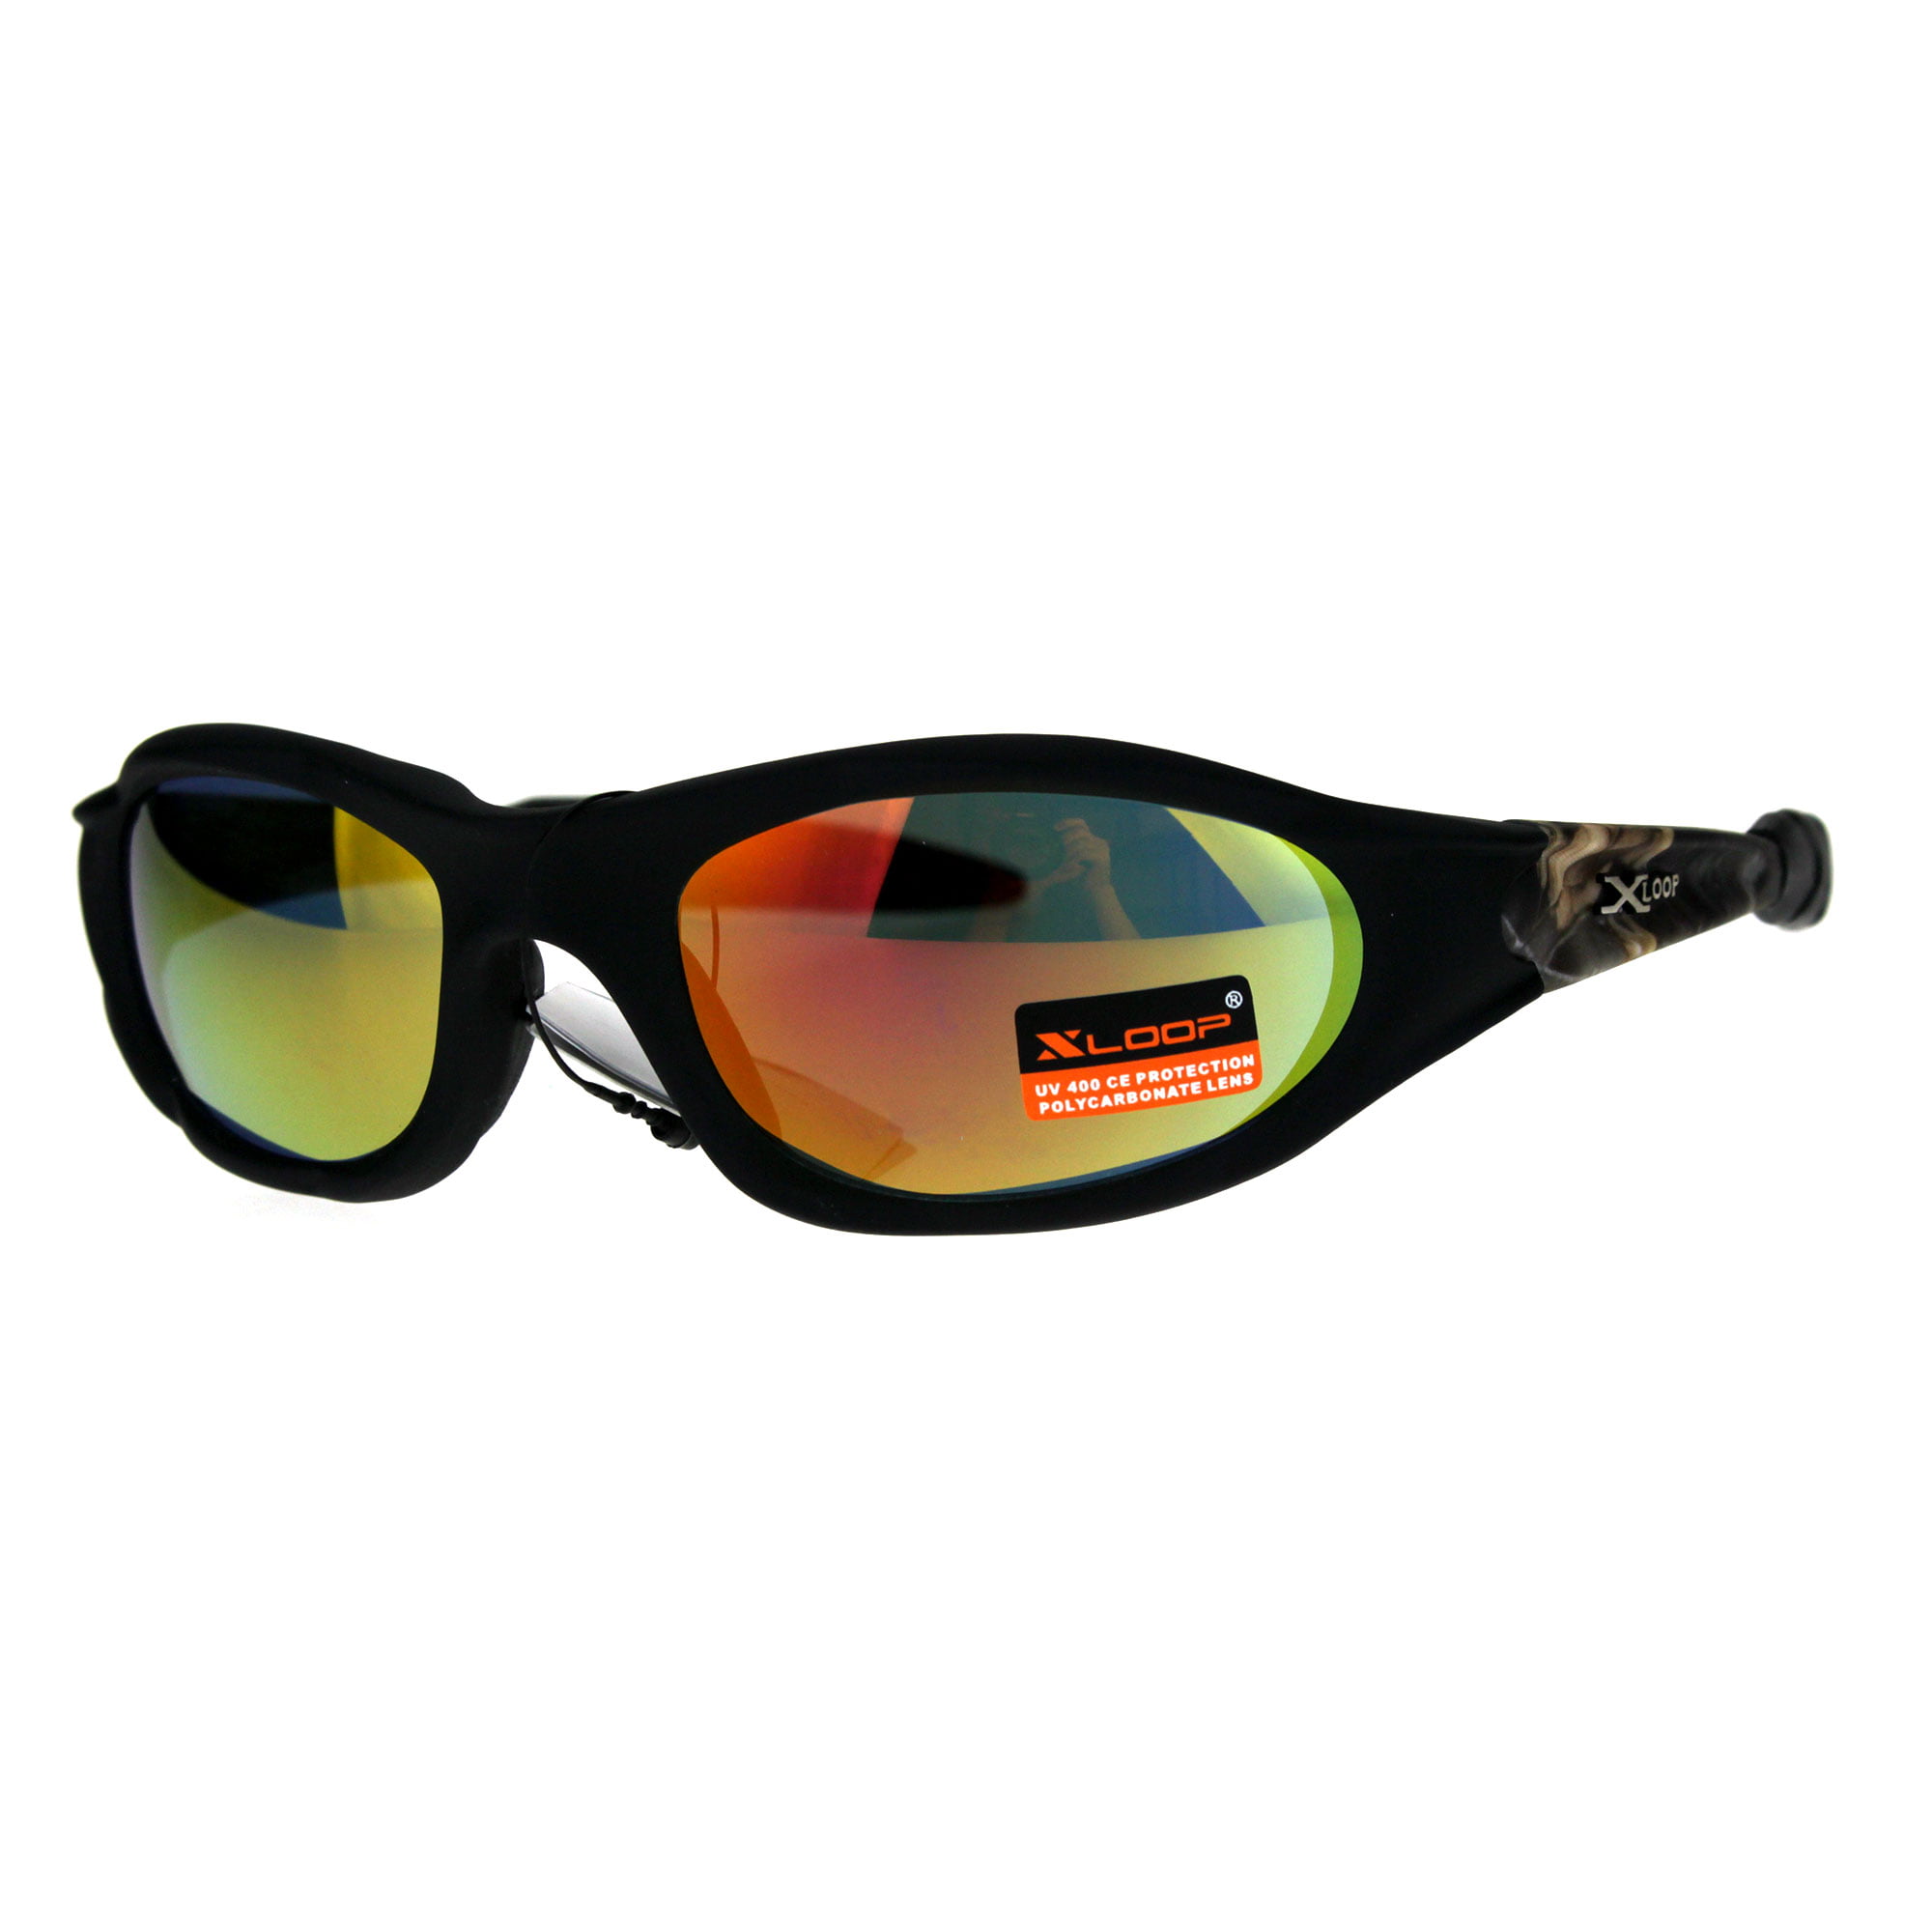 Dirty Dog Shovel Sunglasses Sports Lifestyle Unisex Polarised Cat 3 Lens Black 